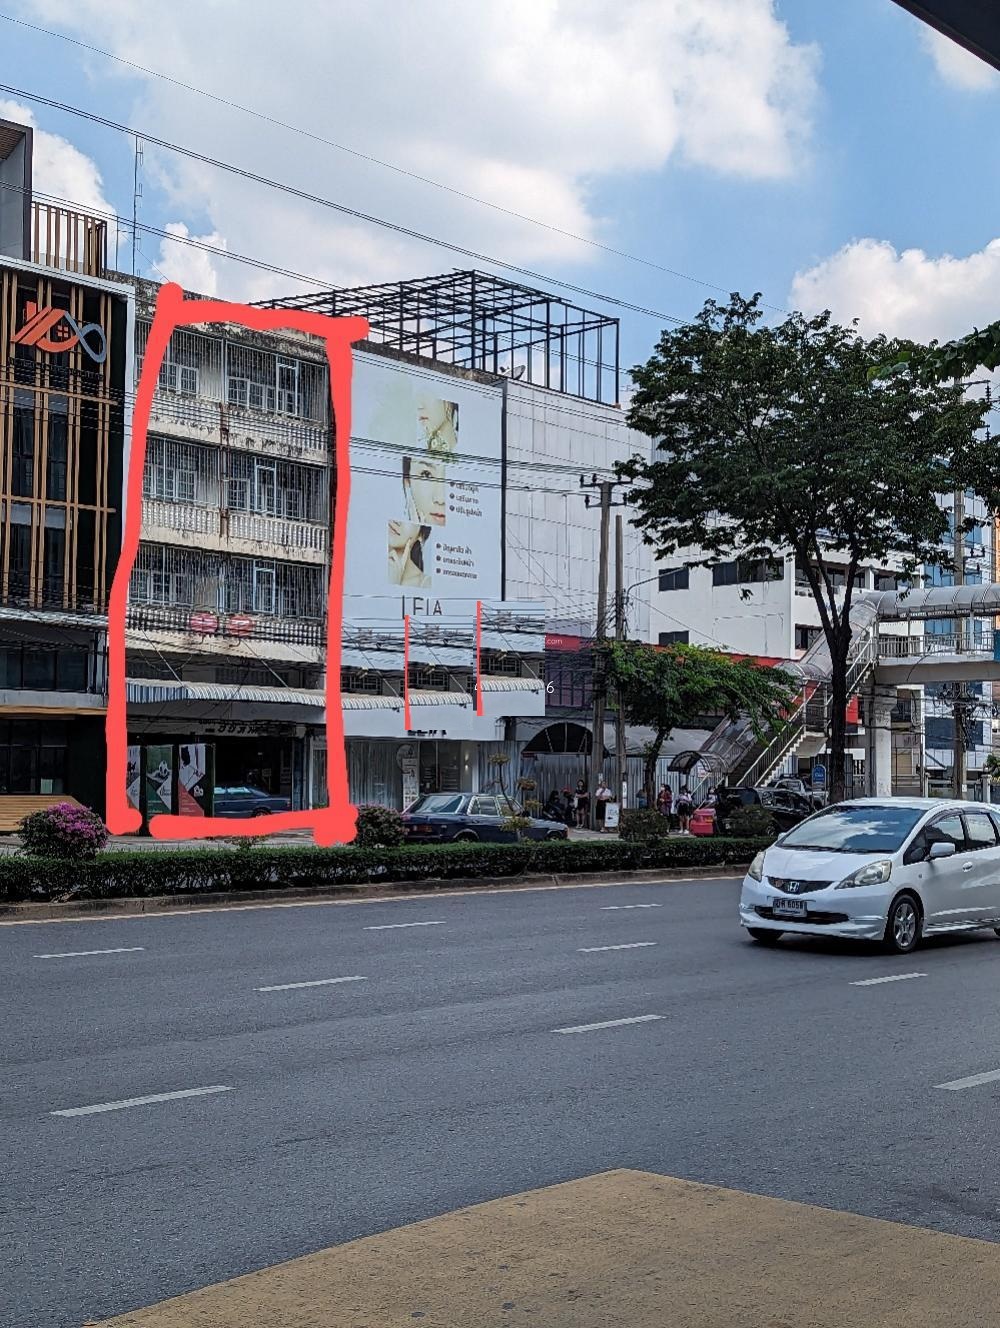 ให้เช่าอาคารพาณิชย์ 4 ชั้น 2 คูหา เนื้อที่ 67 ตารางวา  หน้าตึกจอดรถได้ 3คัน ใกล้สถานี MRT สิรินธร สายสีน้ำเงิน รูปที่ 1